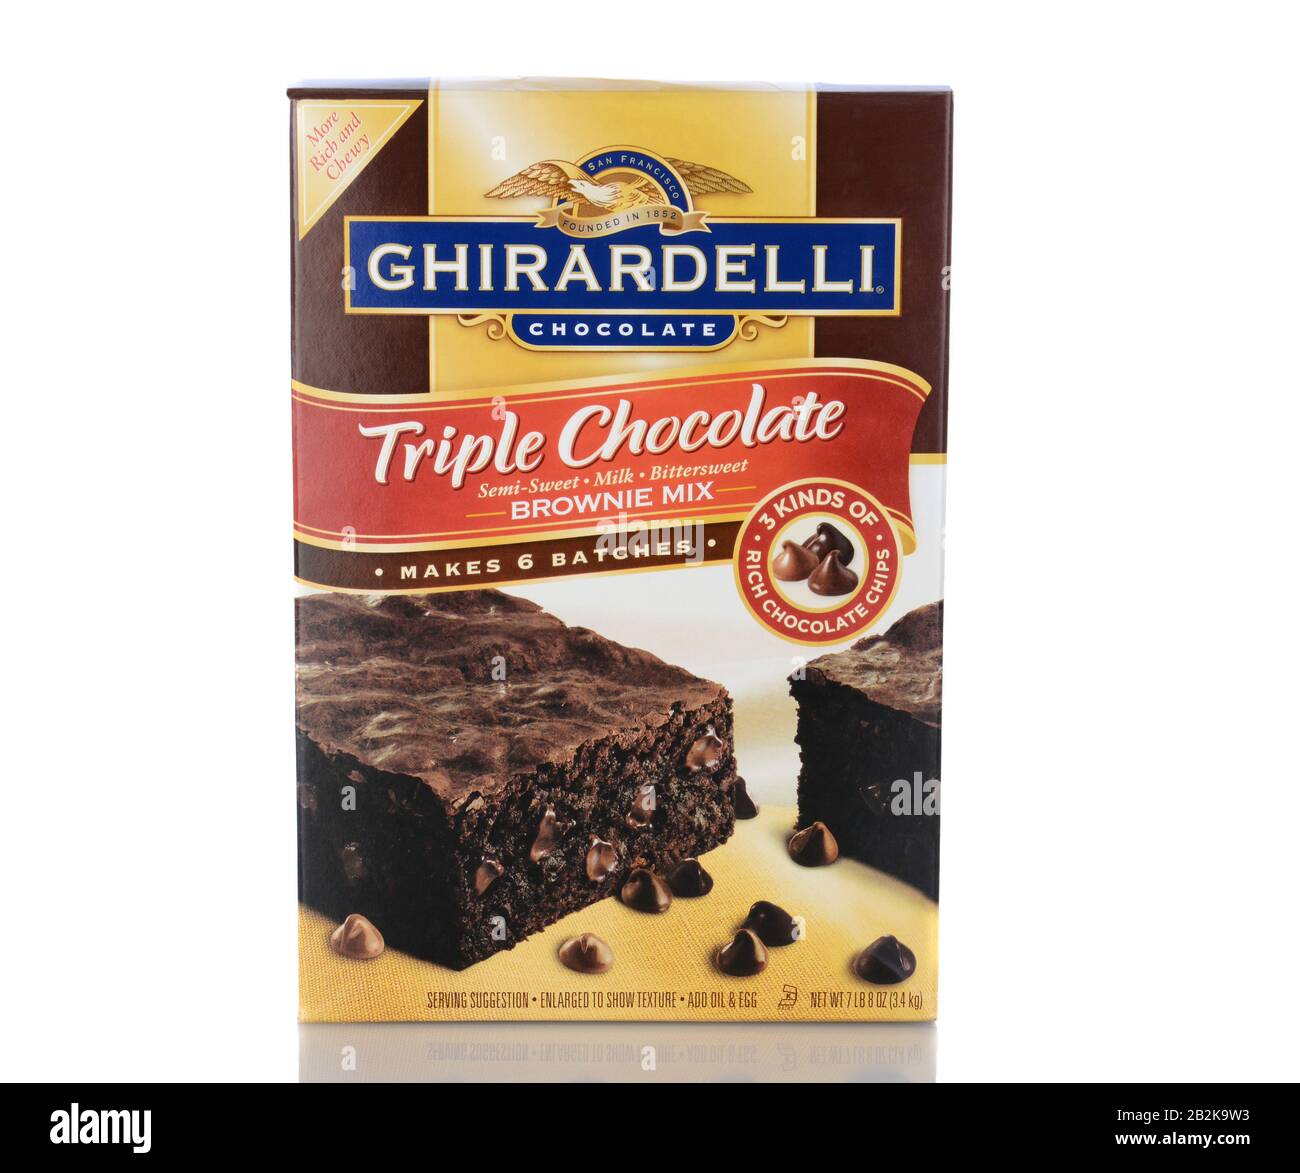 Irvine, CA - 05. Januar 2014: Eine Schachtel mit Ghirardelli Triple Chocolate Brownie Mix. Domingo Ghirardelli gründete sein Schokoladenunternehmen in San Francisco i. Stockfoto